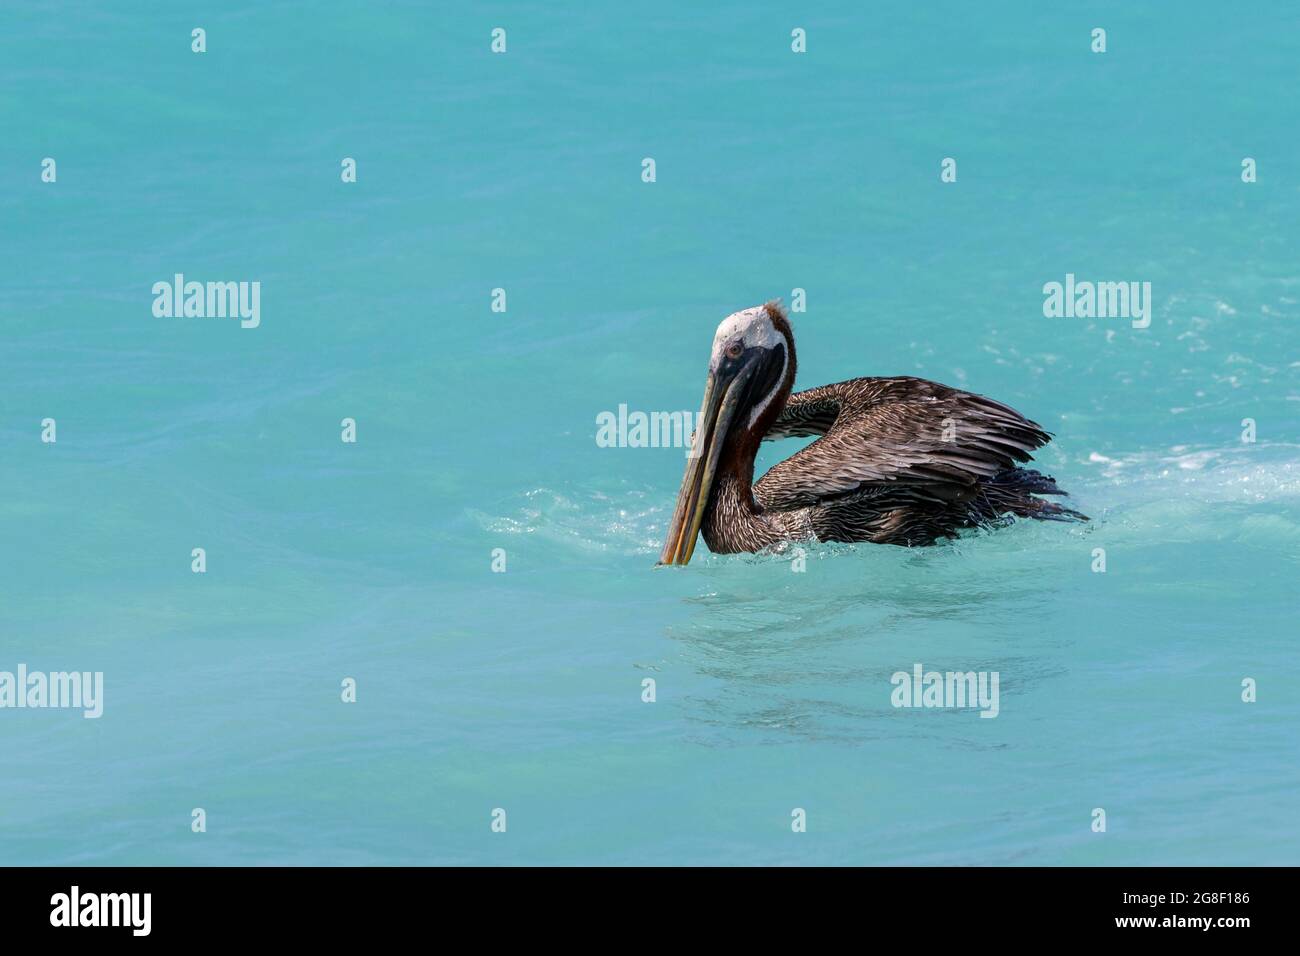 Pélican brun (Pelecanus occidentalis) nageant dans des eaux tropicales colorées, Bonaire, Antilles néerlandaises. Banque D'Images